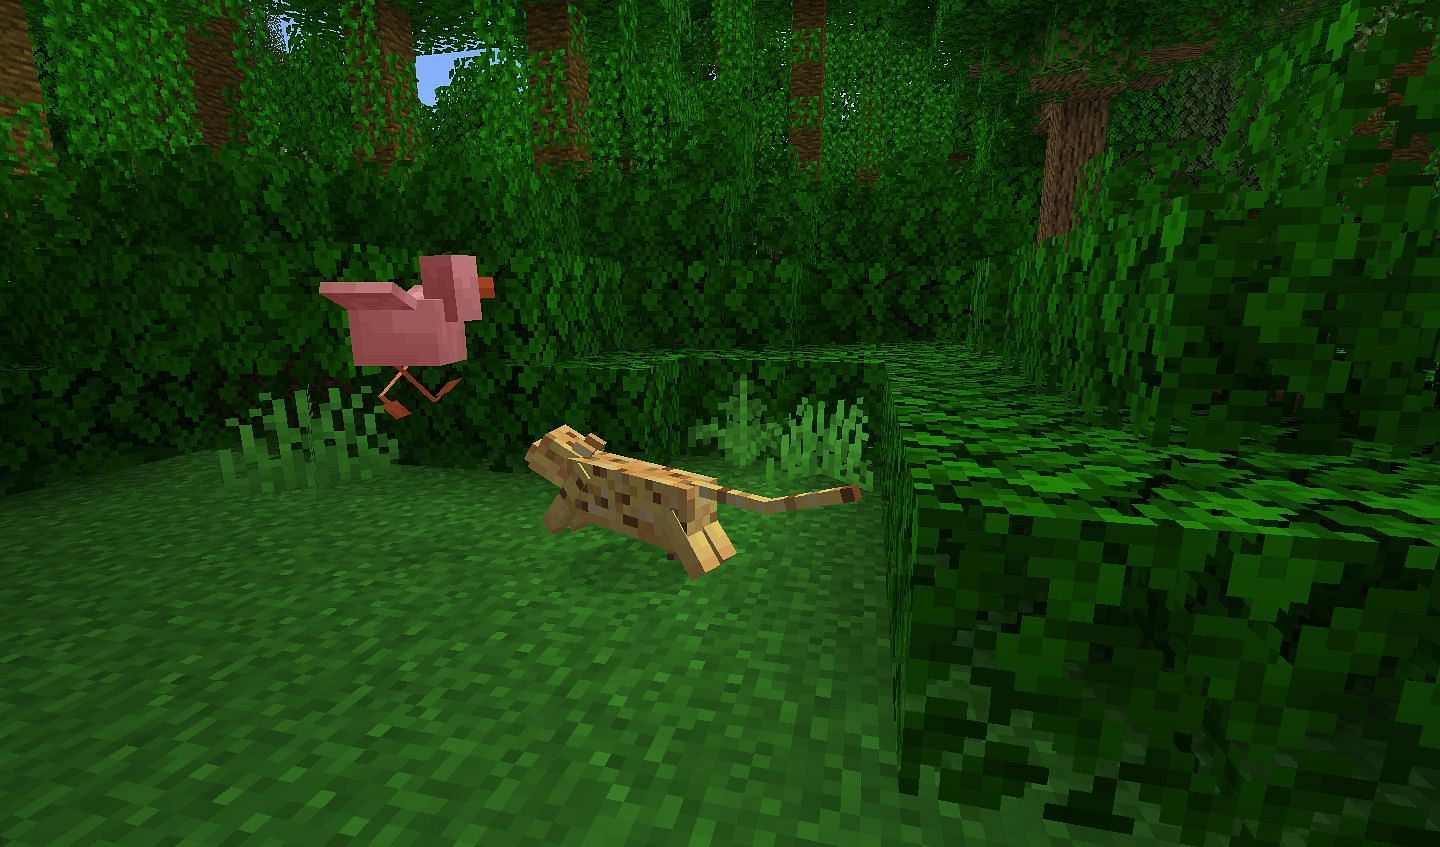 Ocelot attacking chicken (Image via Minecraft Wiki)